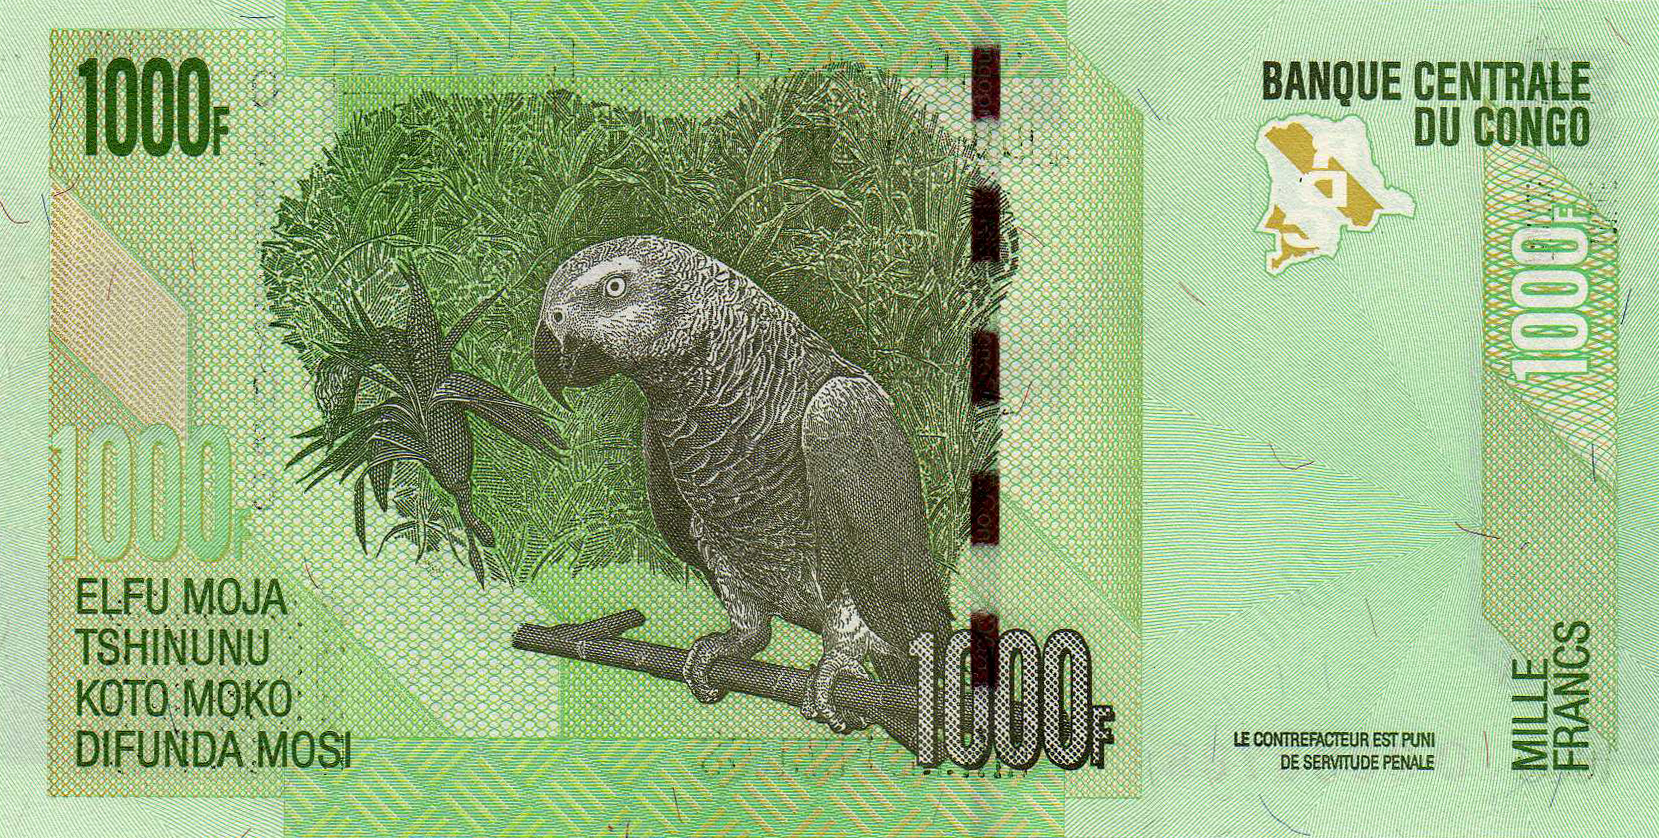 Details about   Congo DR 1000 Francs 30.06.2013 - Okapis/Parrots p101b UNC